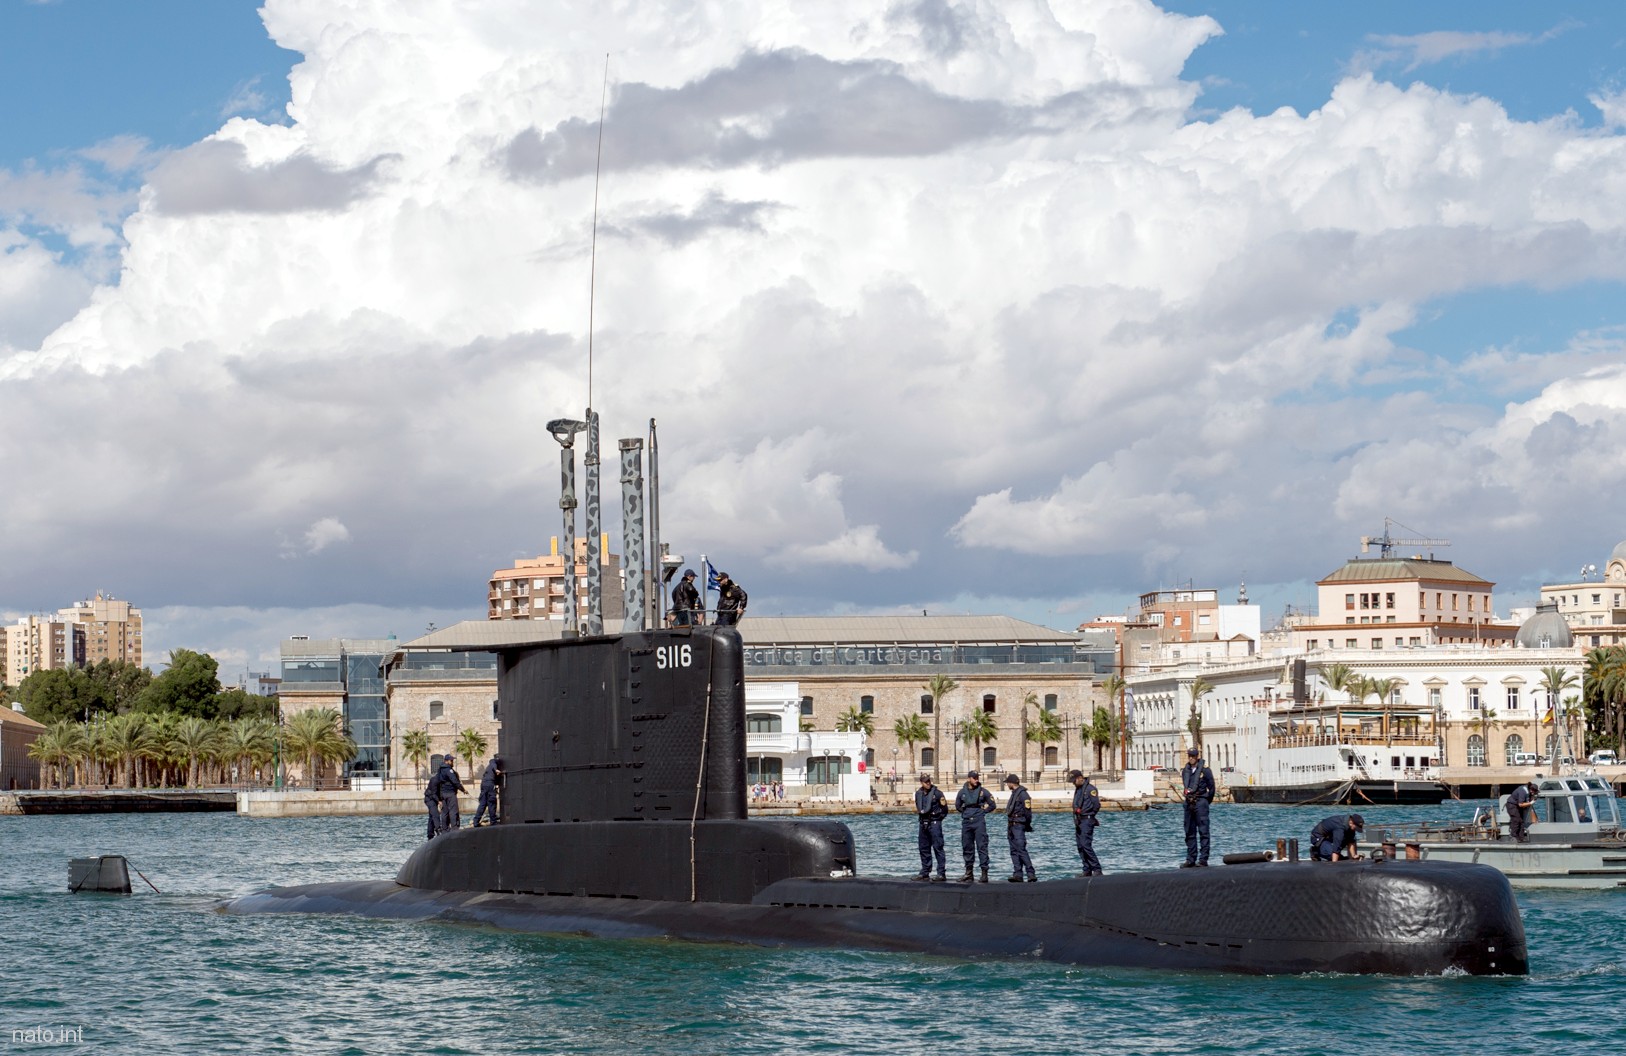 s-116 hs poseidon type 209-1200 class submarine hellenic navy 03